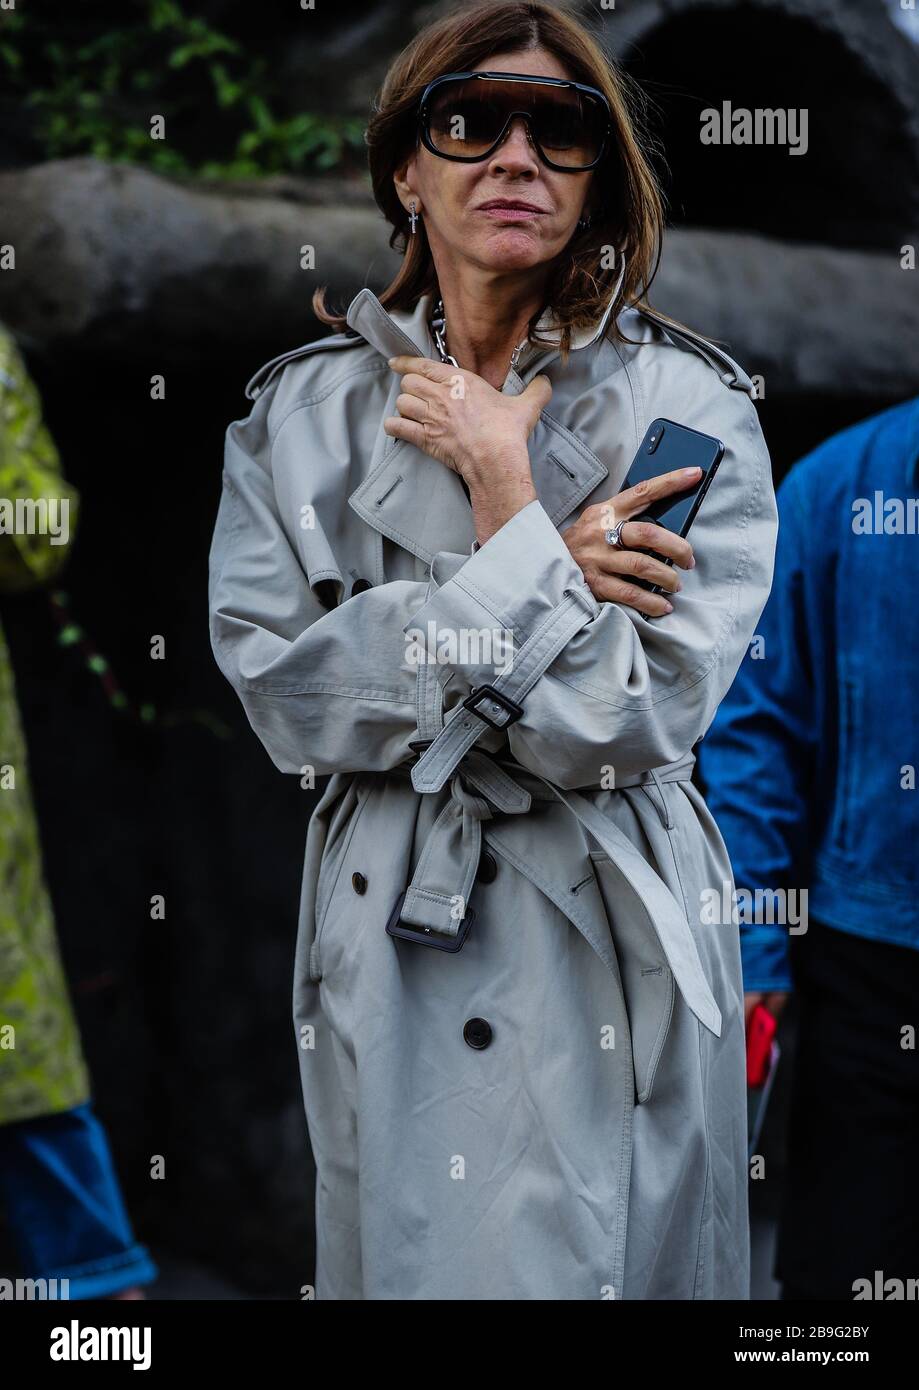 PARIS, France - 1 mars 2019 : Carine Roitfeld dans la rue de Paris. Banque D'Images